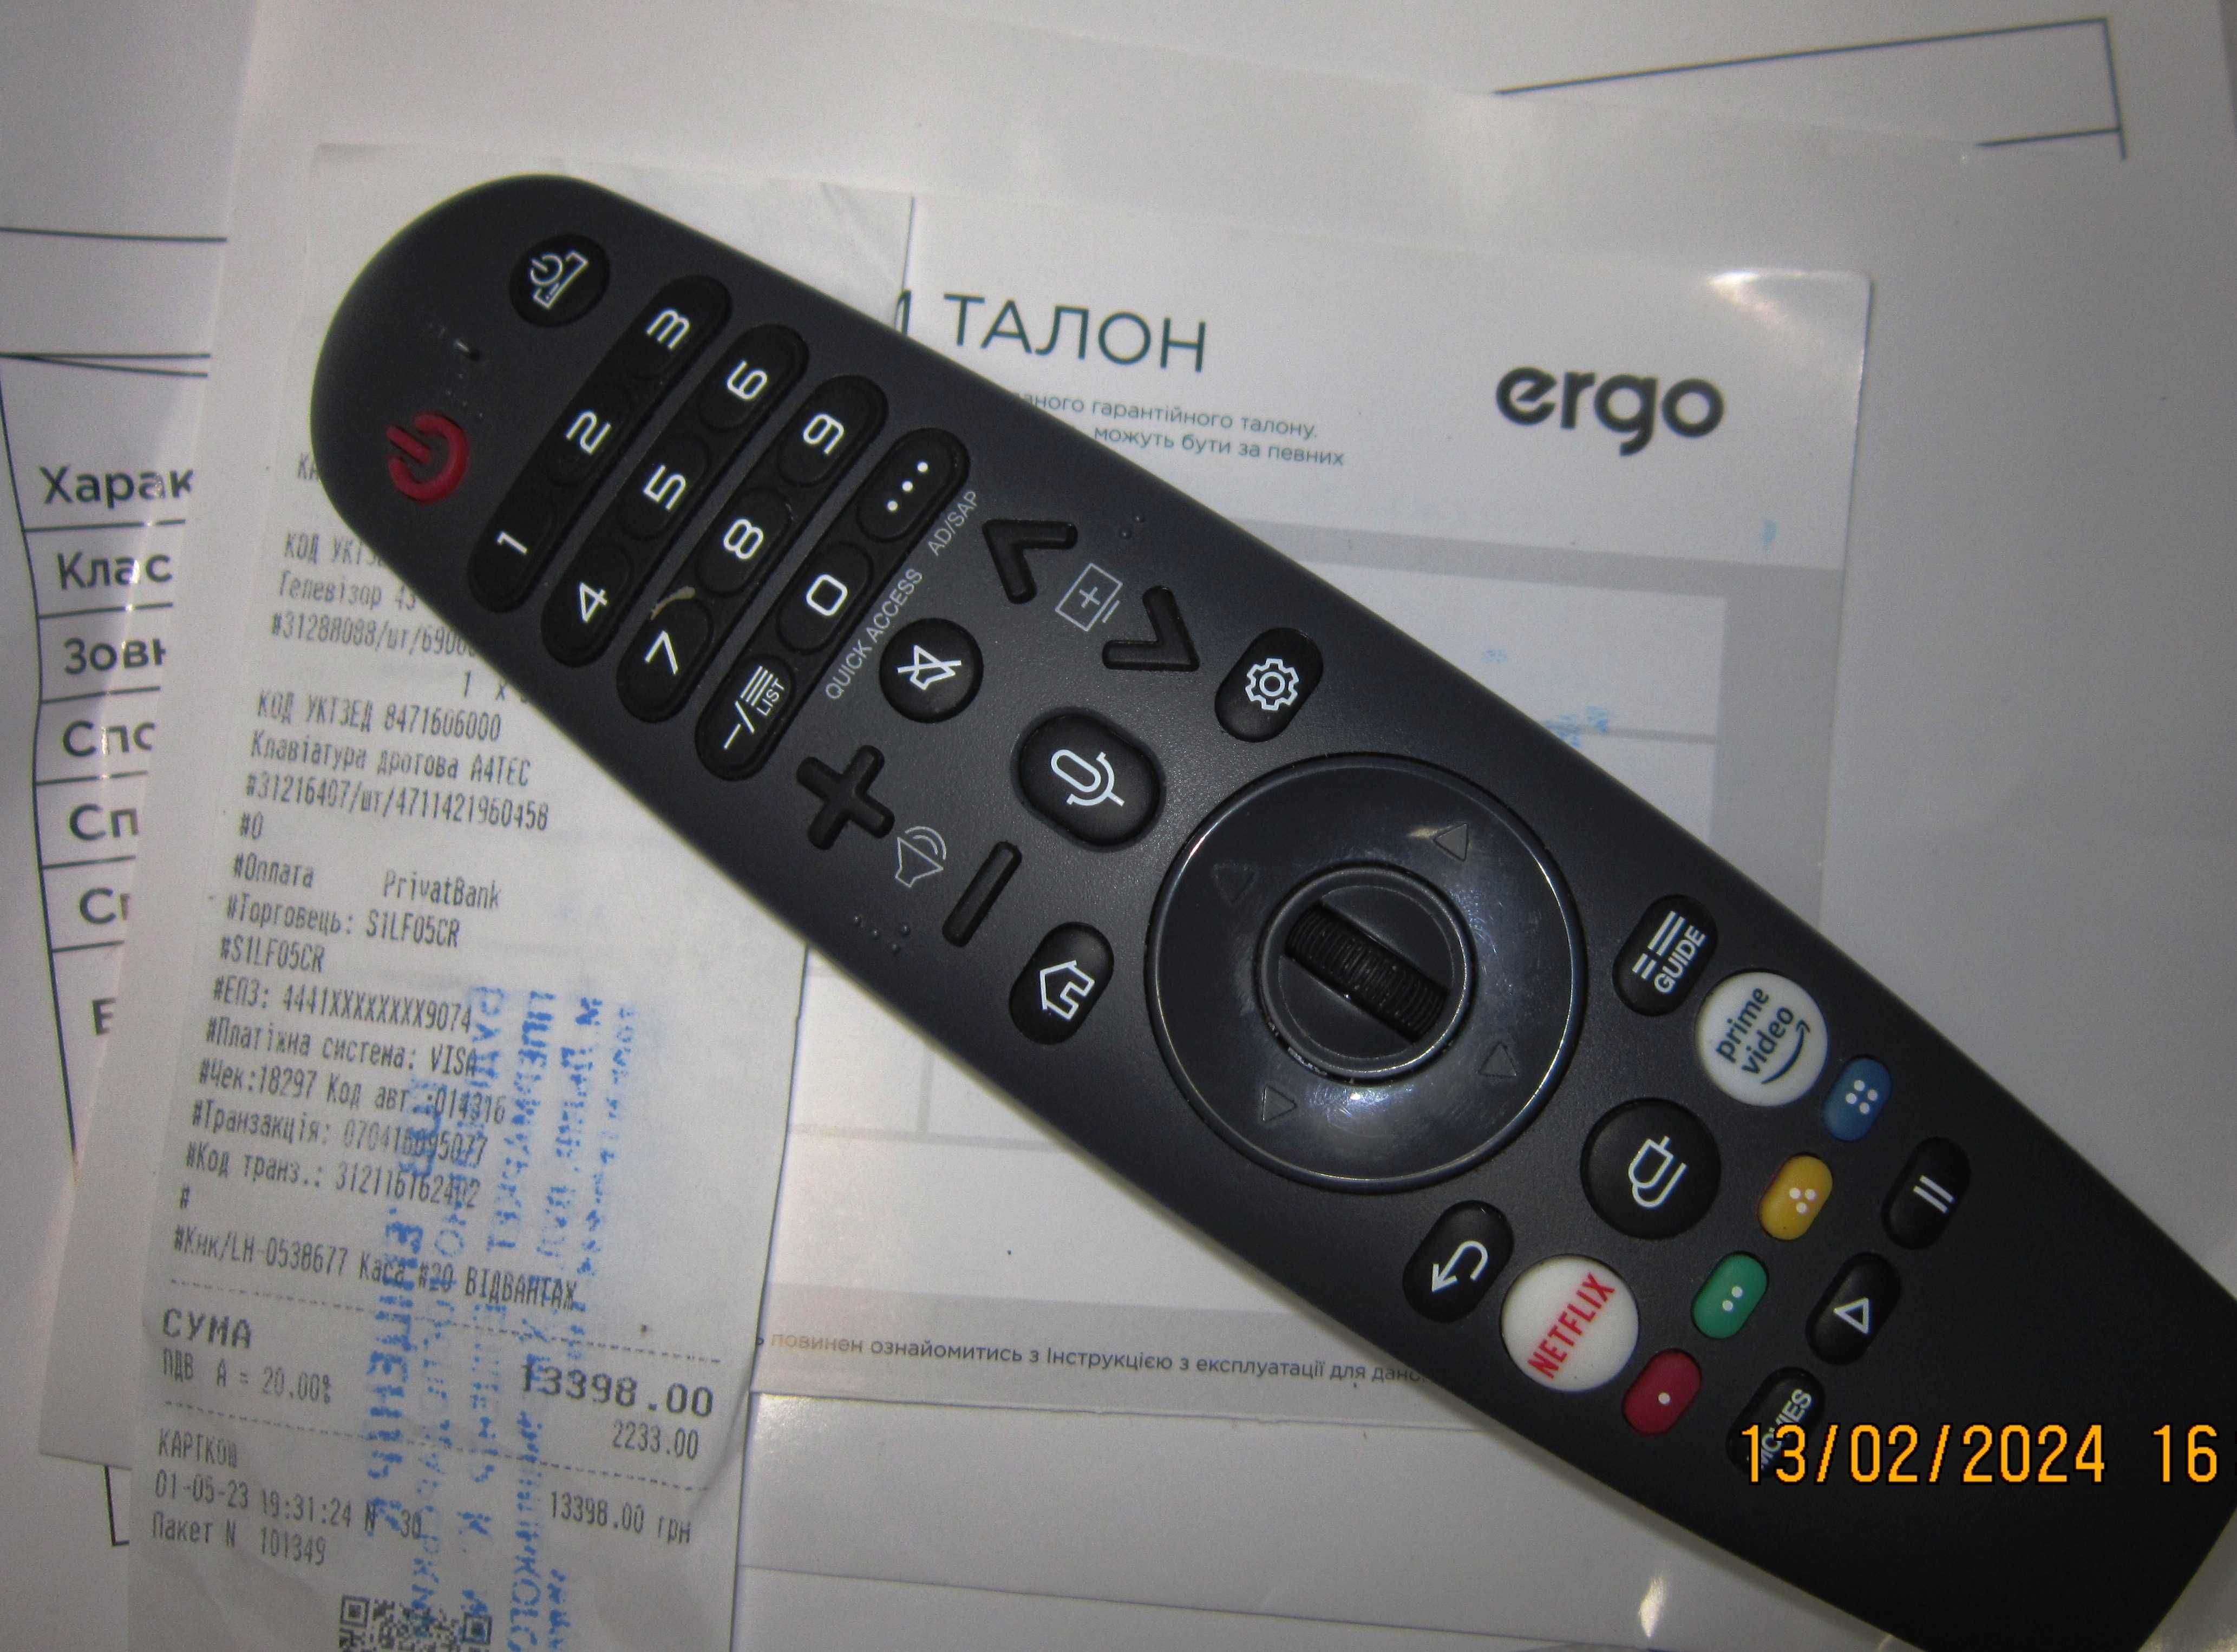 Телевизор Ergo WUS9100 Новый в упаковке.